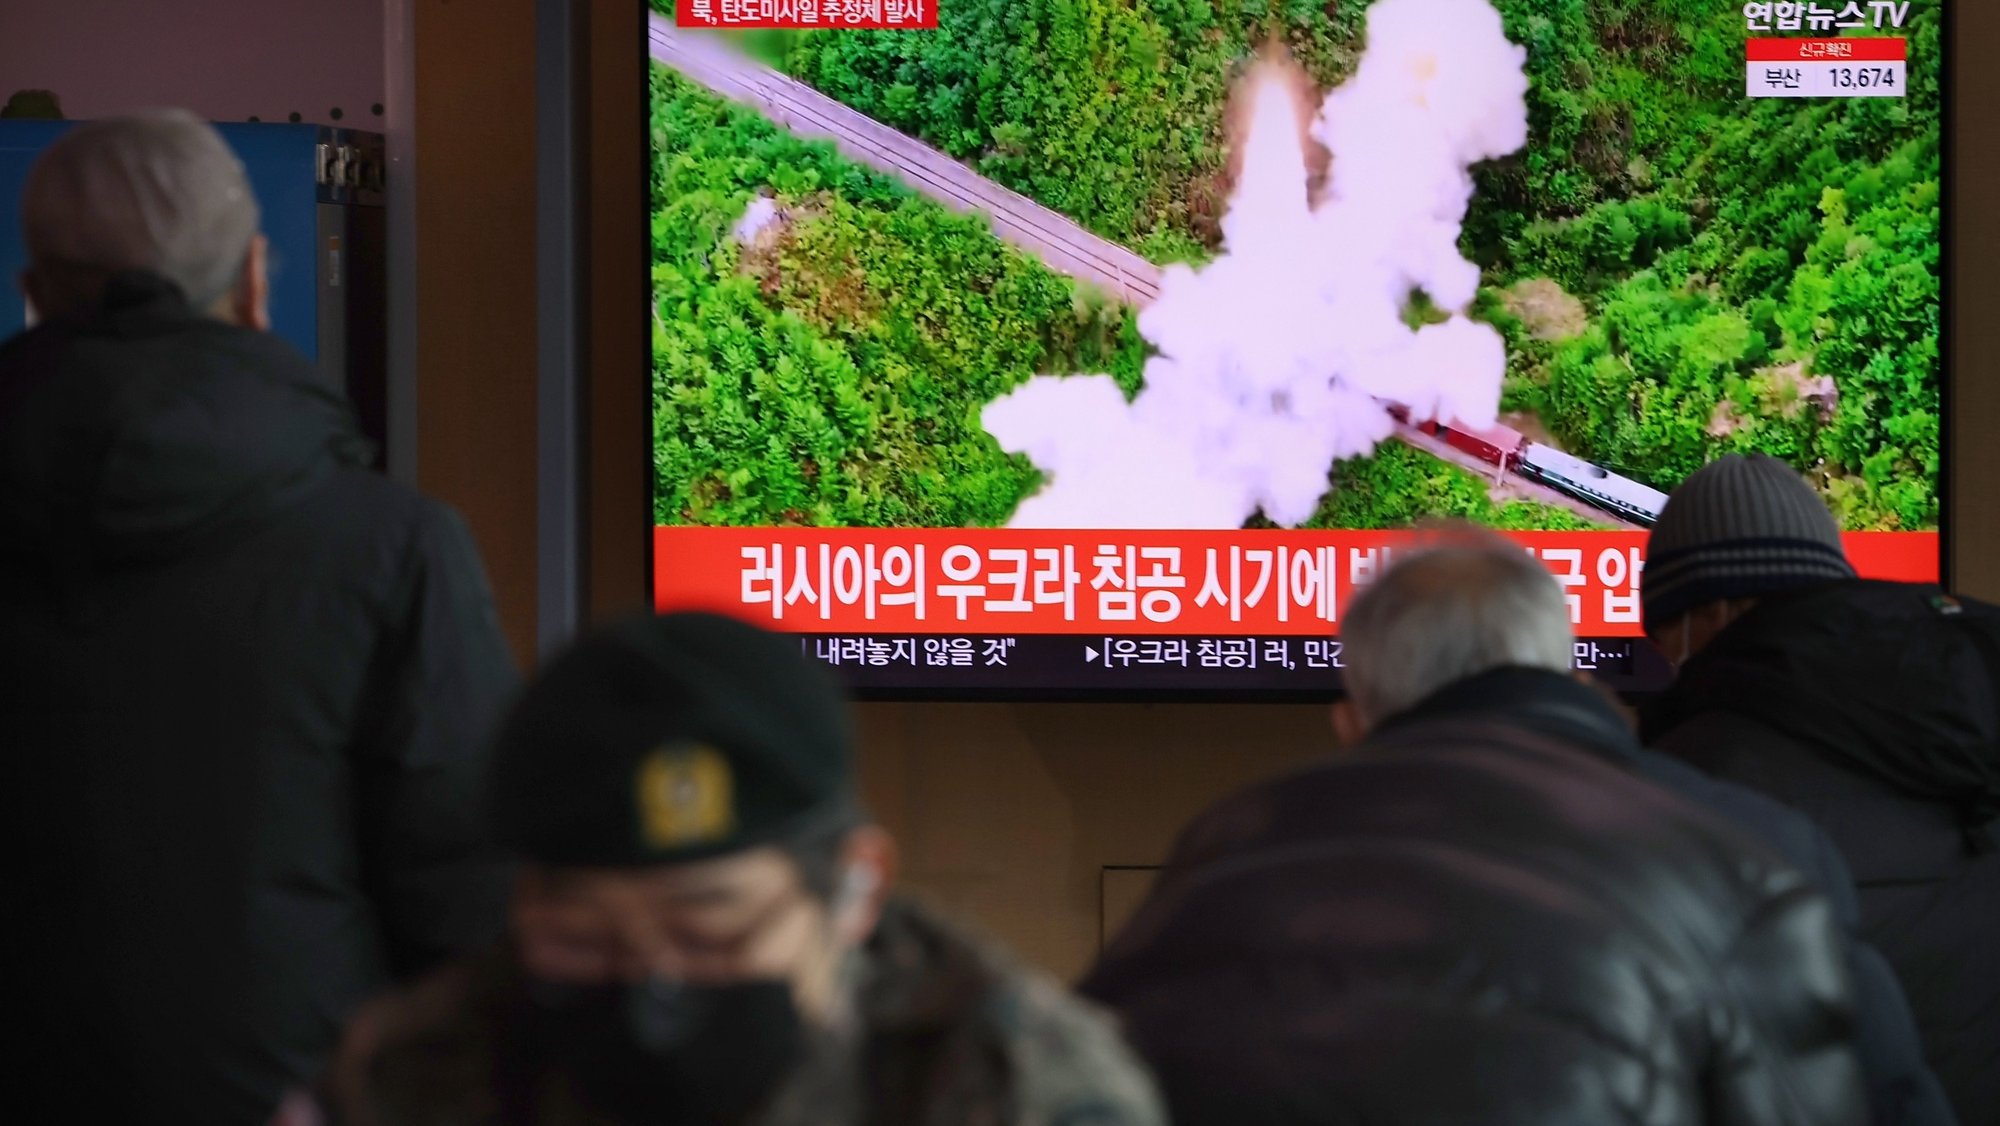 Uma reportagem sobre o lançamento de um suspeito míssil balístico pela Coreia do Norte é transmitida em uma televisão na Estação Seul em Seul, Coreia do Sul, em 27 de fevereiro de 2022